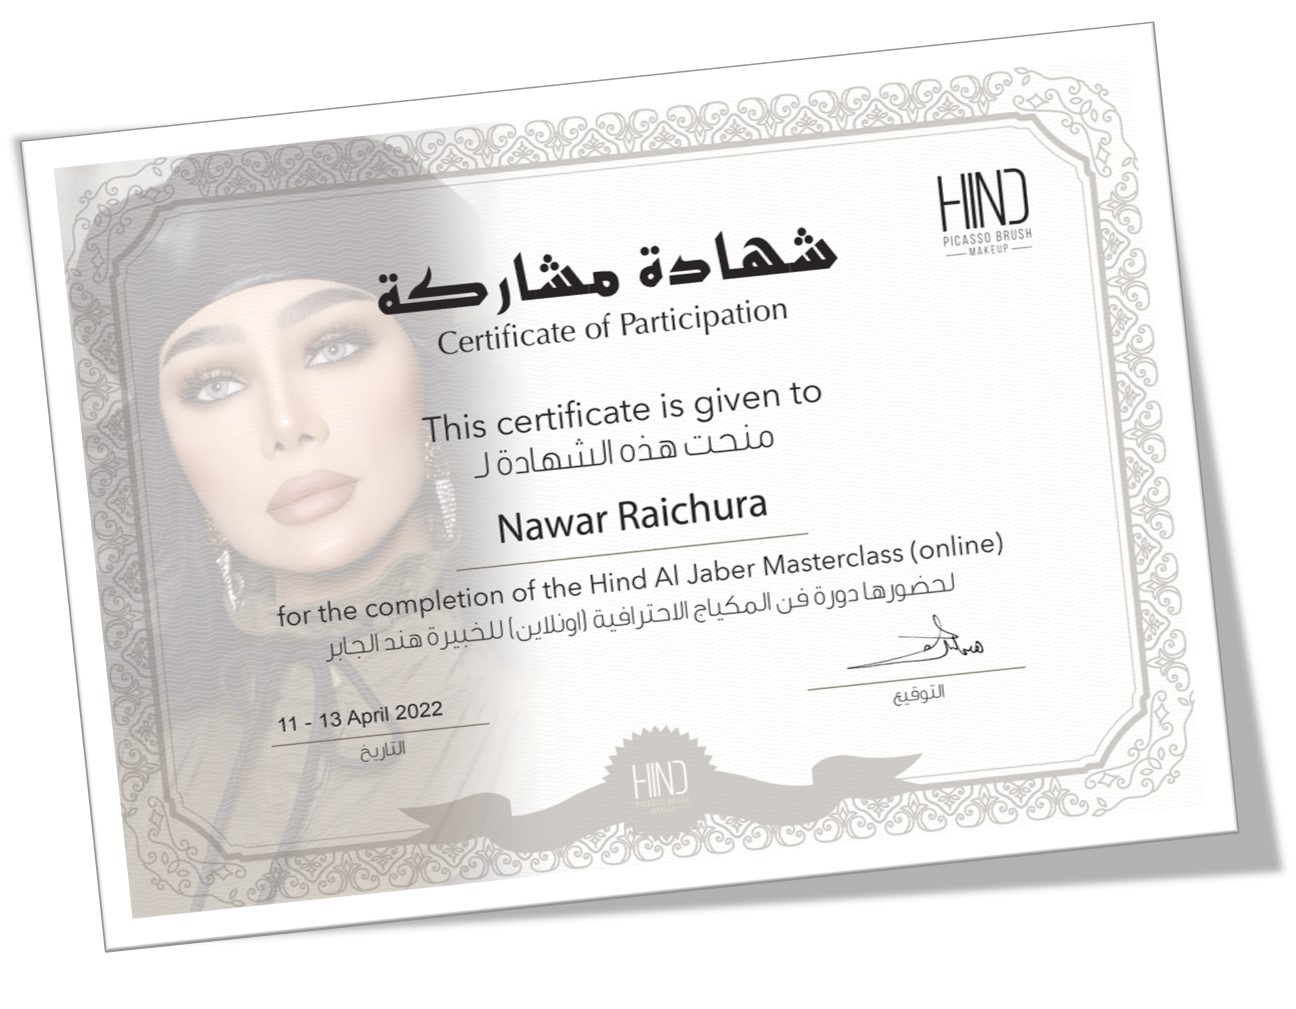 Hind-Al-Jaber-Certificate-Nawar-Raichura